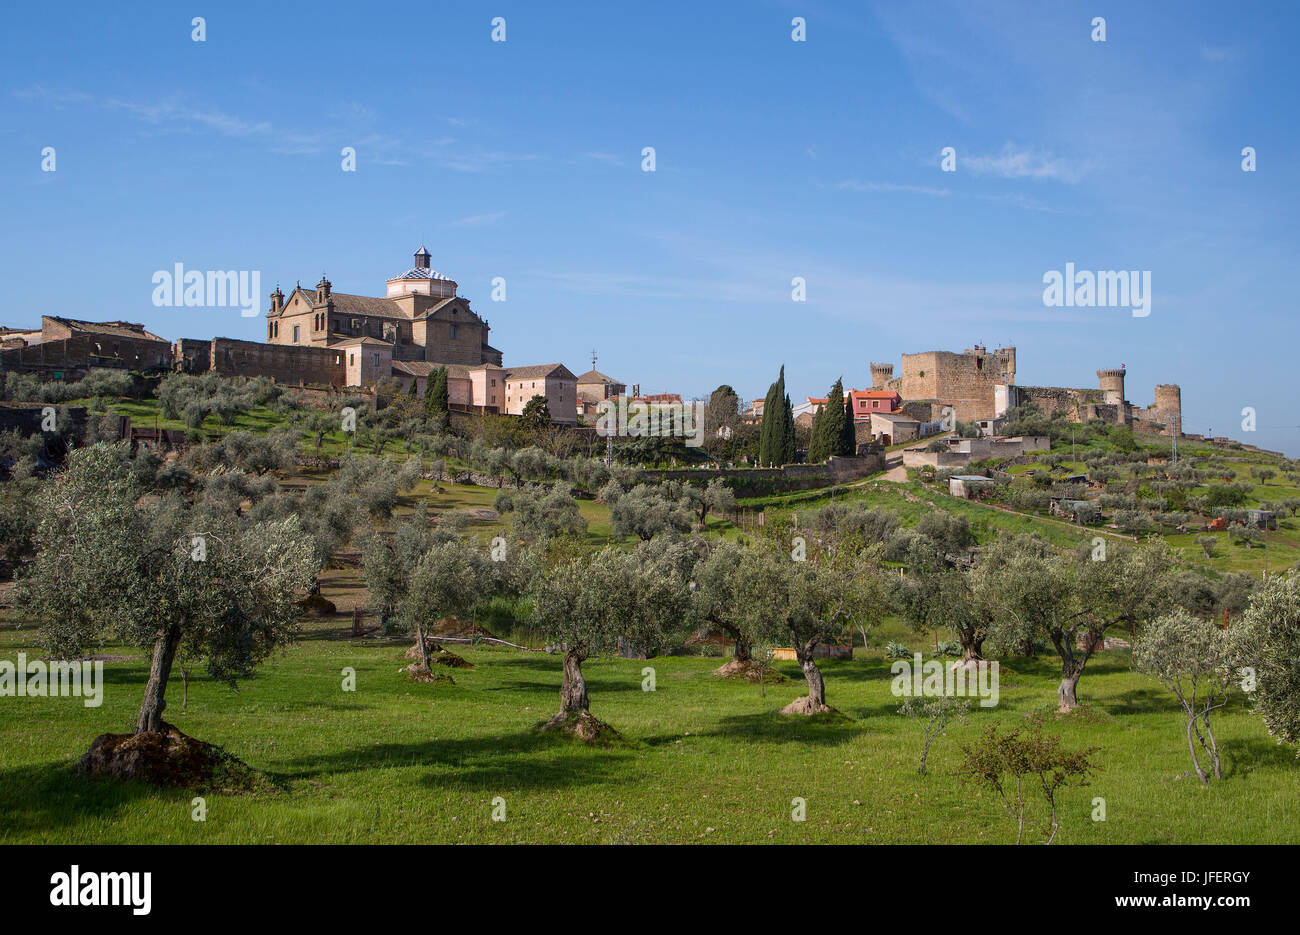 Spain, Castilla La Mancha Region, Oropesa City, Oropesa castle Stock Photo